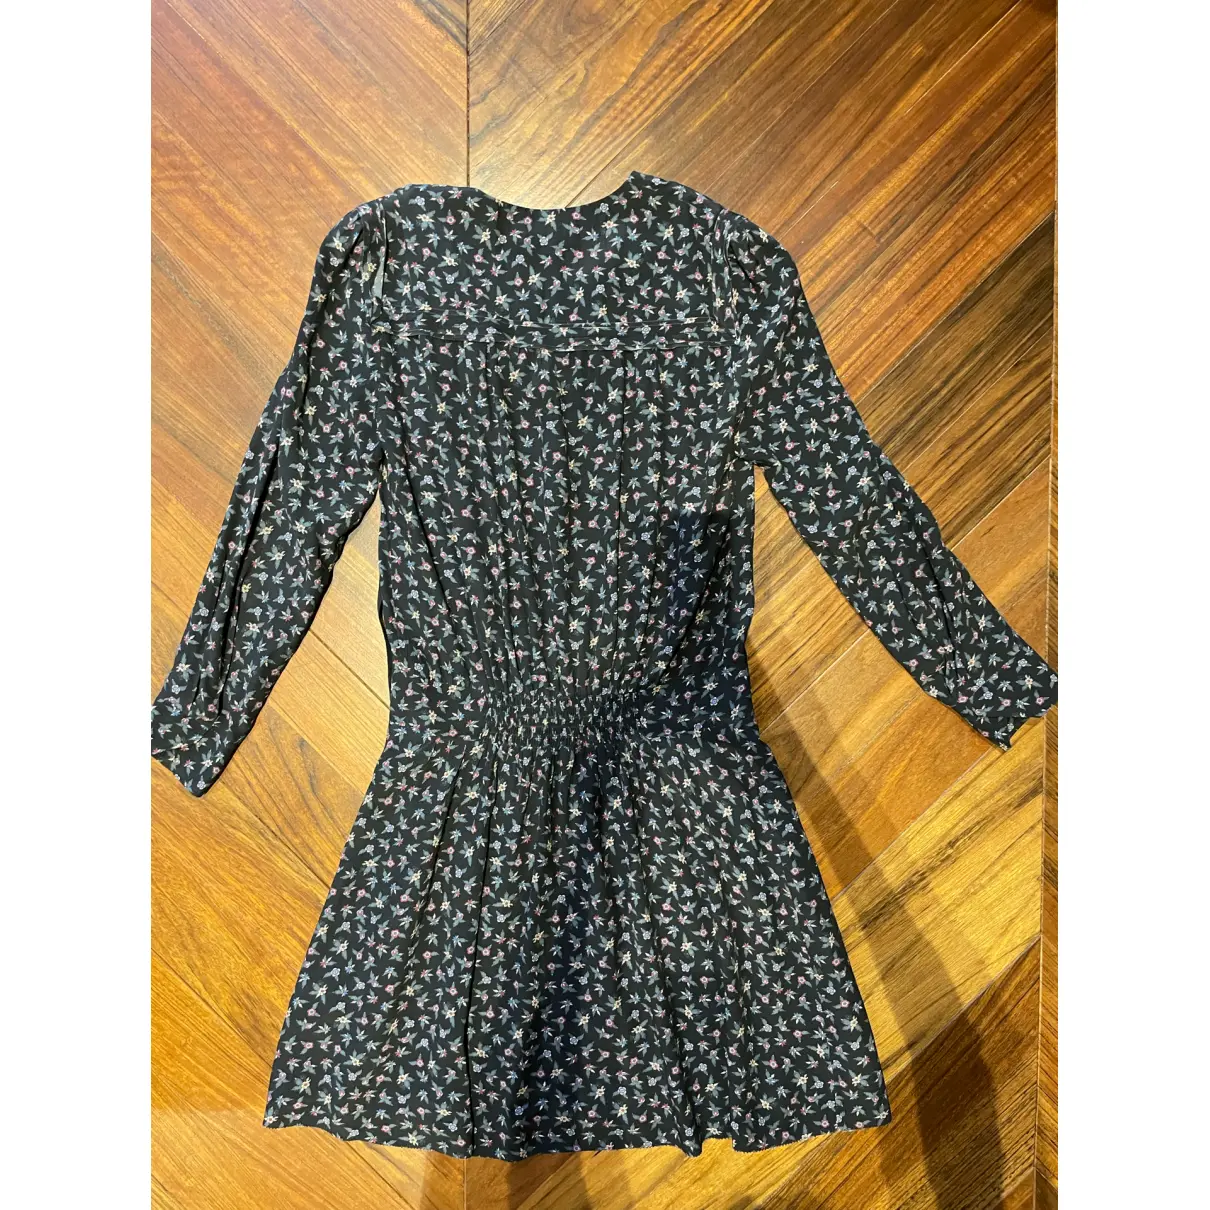 Buy Zadig & Voltaire Spring Summer 2019 mini dress online